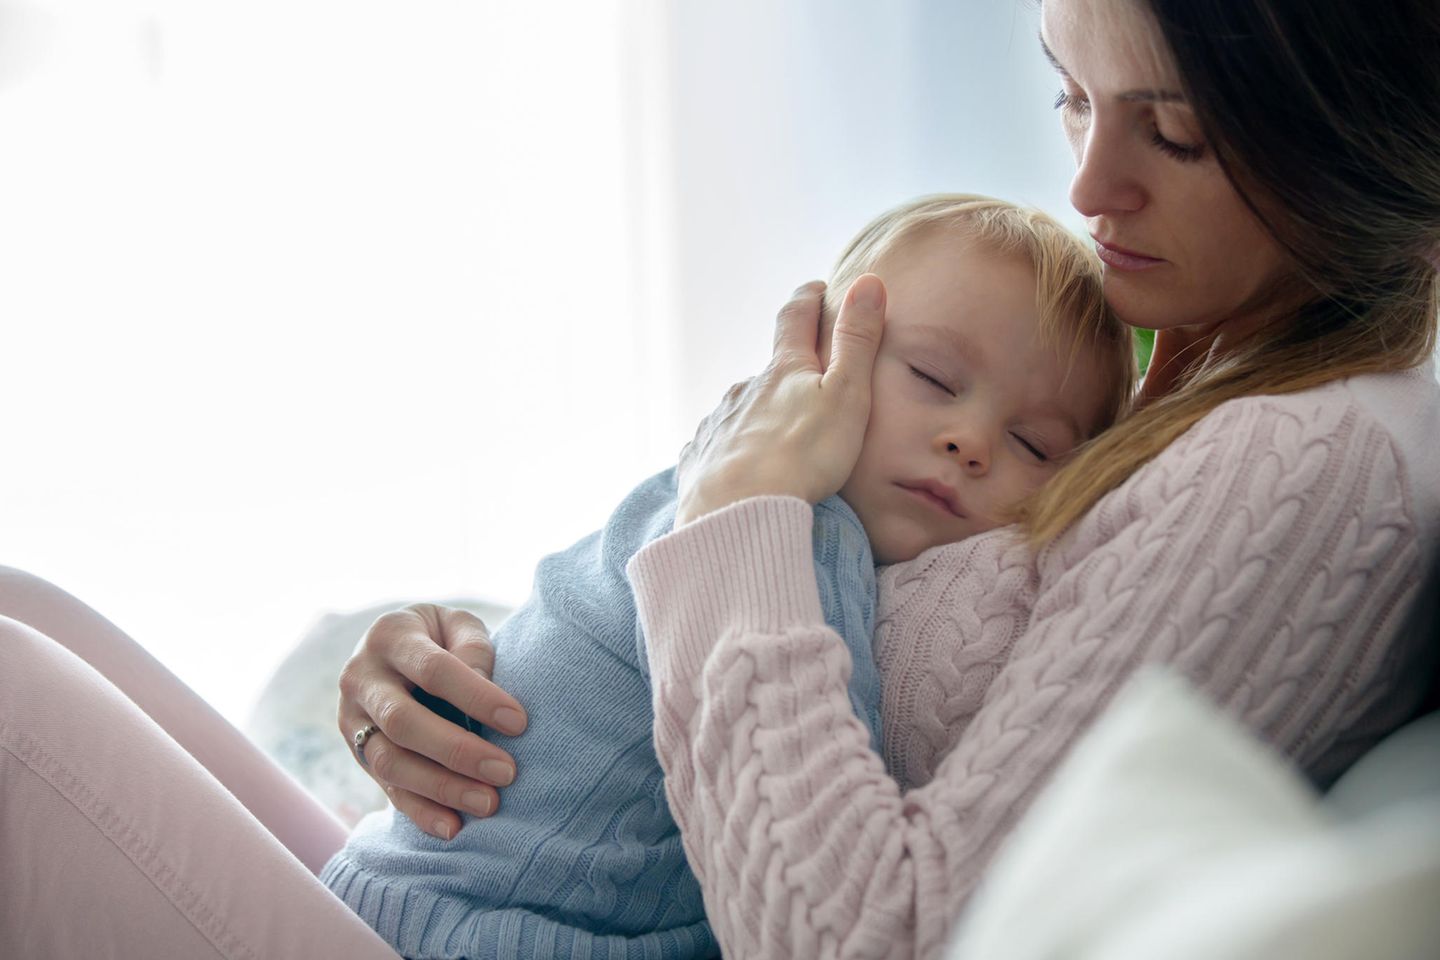 Hirnhautentzündung: Krankes Kind liegt schlafend auf dem Bauch der Mutter